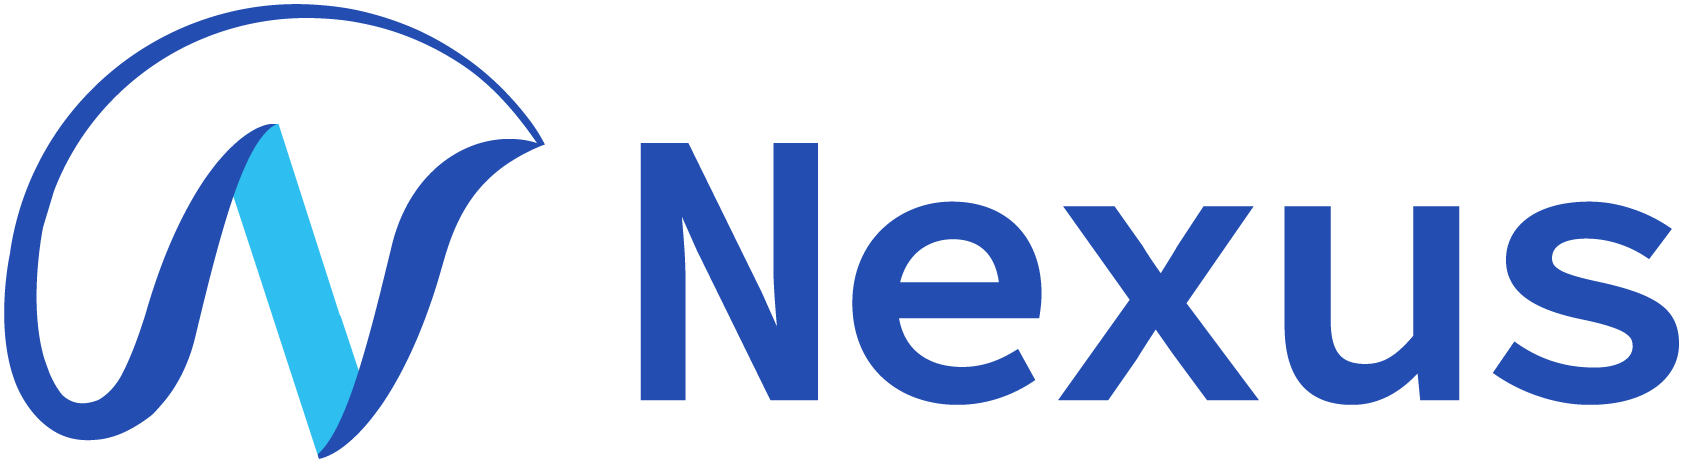 お掃除機能付きエアコンや定期清掃、カビ取りなどのエアコンクリーニングを行う奈良市の”Nexus〜ネクサス〜”です